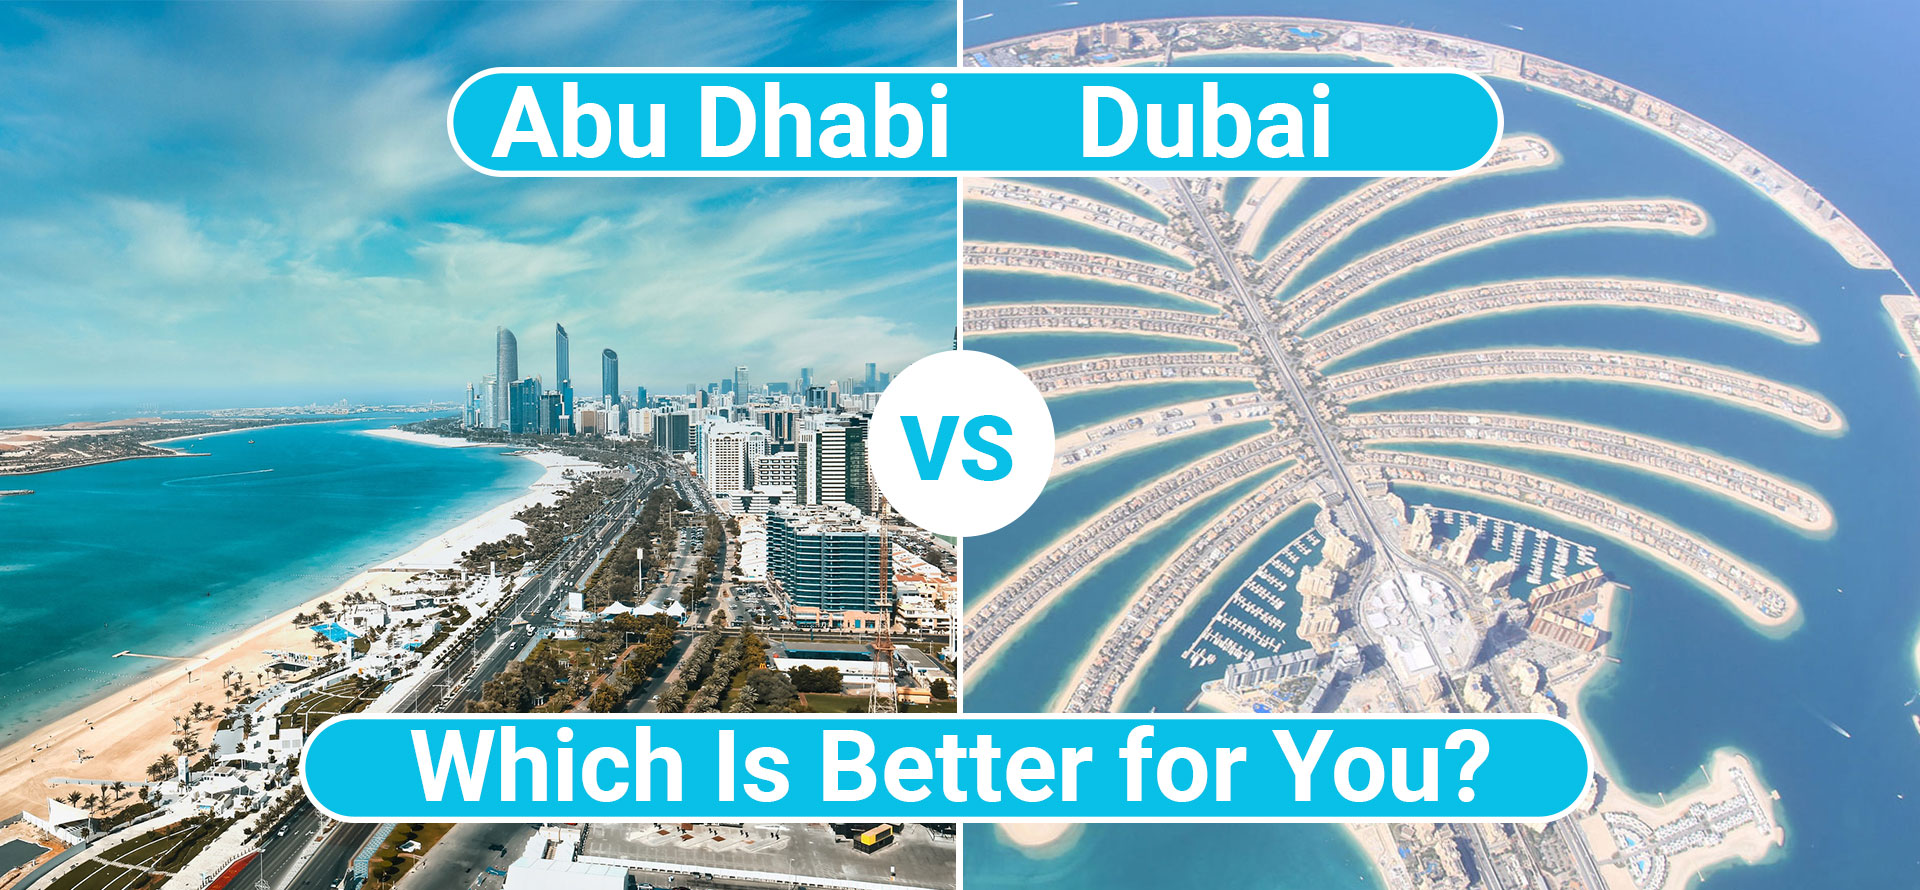 Abu Dhabi vs Dubai.